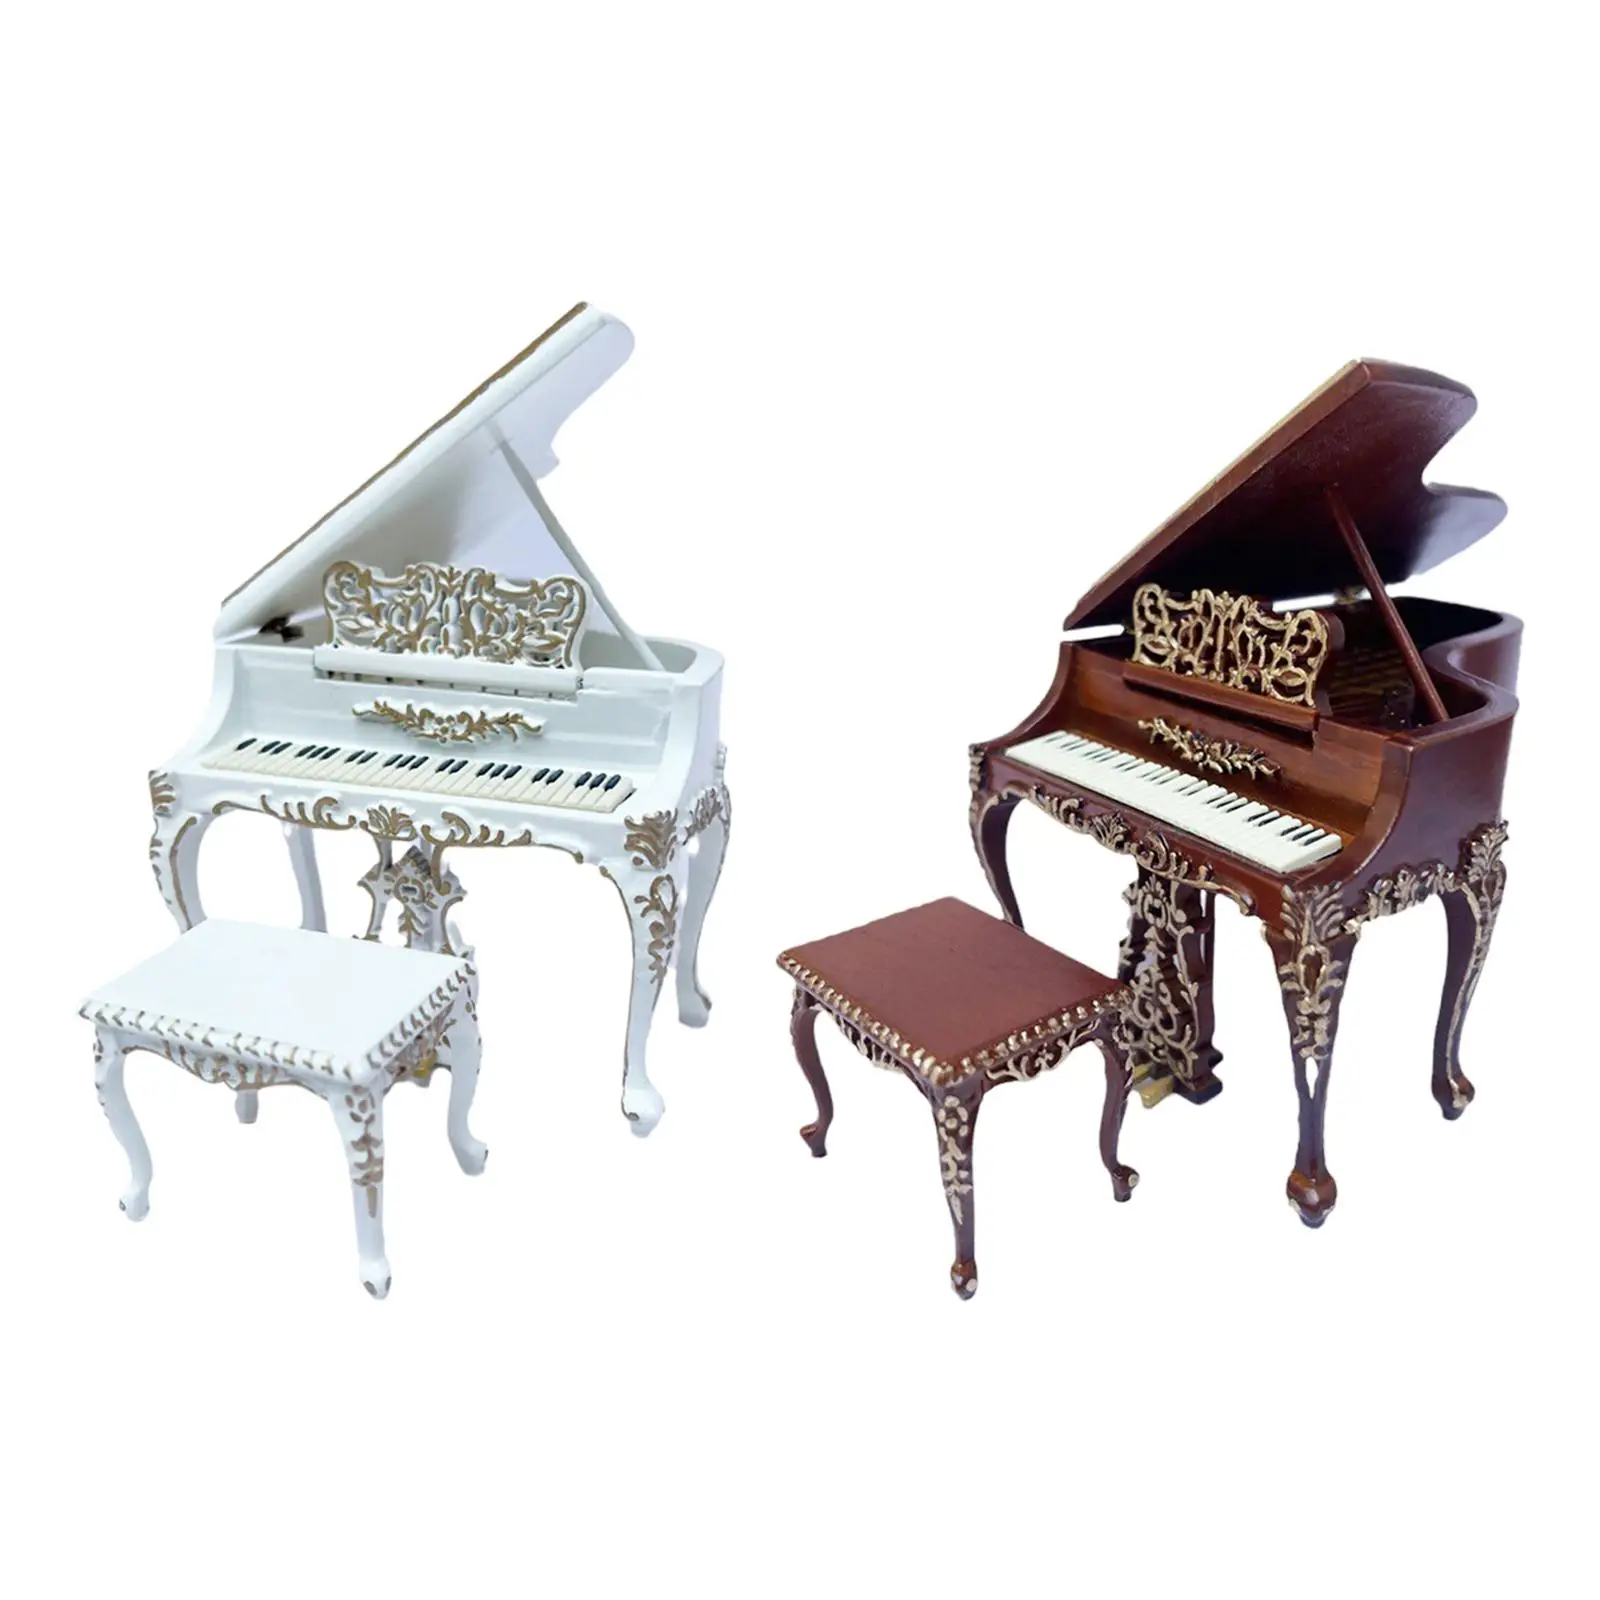 Миниатюрное пианино со стулом, Миниатюрная модель пианино с табуреткой, Миниатюрный инструмент для фортепиано в масштабе 1: 12